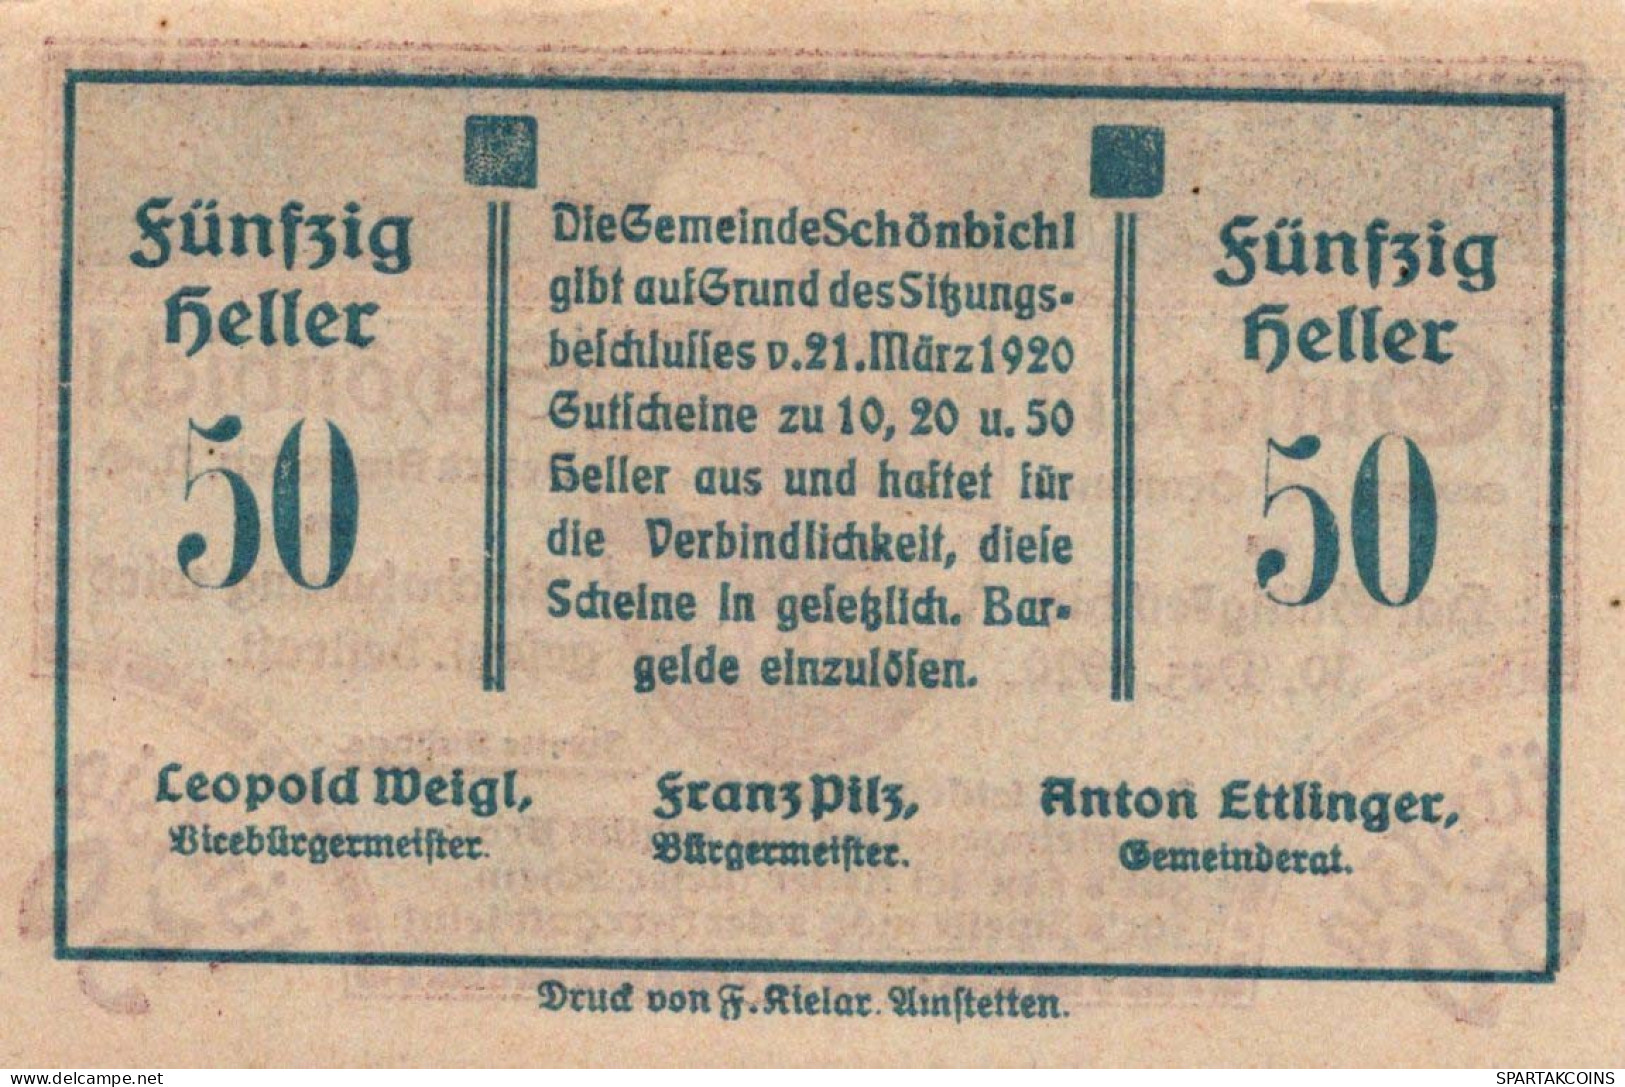 50 HELLER 1920 Stadt SCHoNBICHEL Niedrigeren Österreich UNC Österreich Notgeld #PH005 - [11] Local Banknote Issues